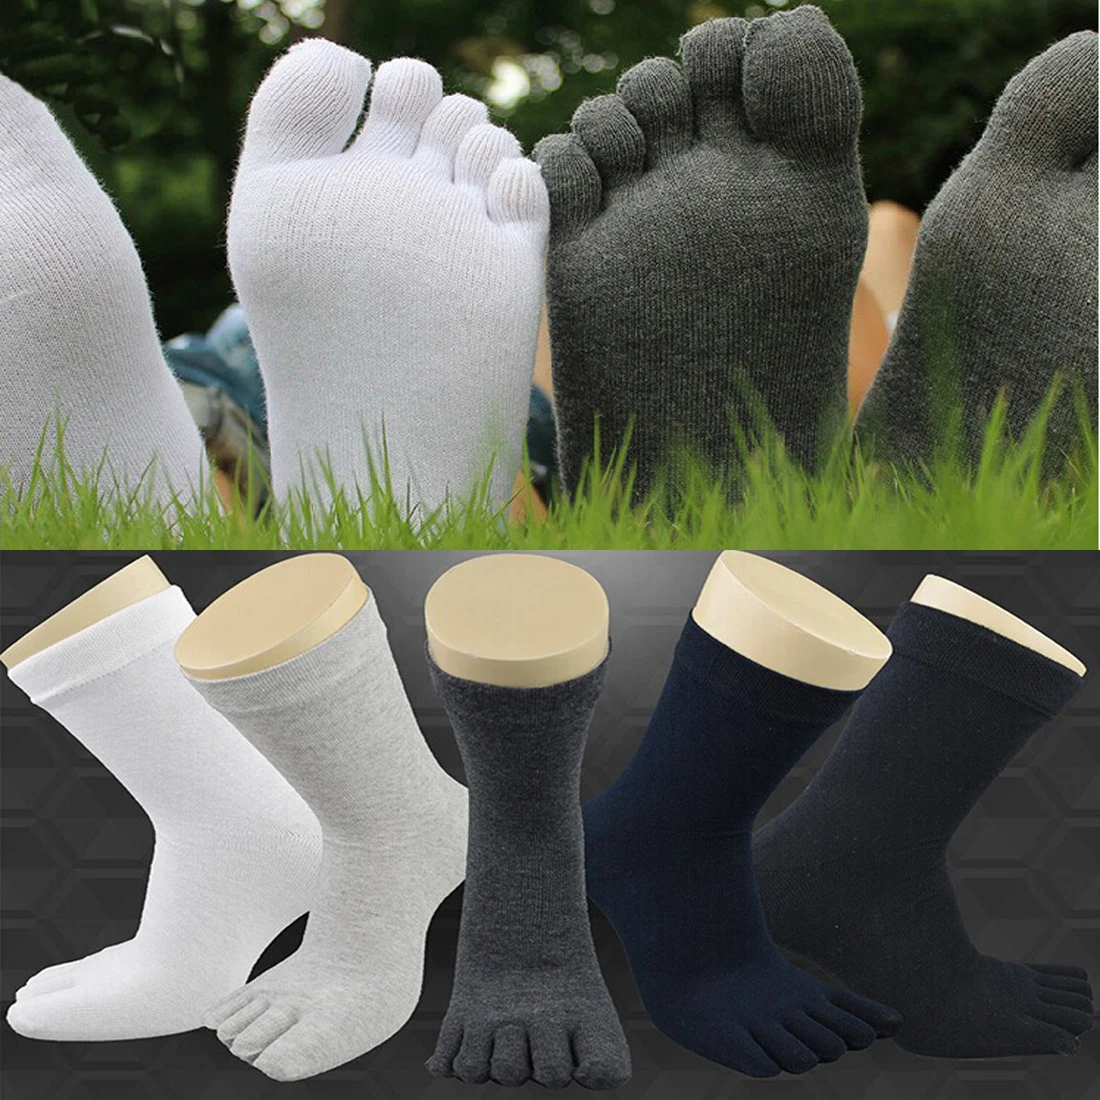 1 Pair New Unisex Socks Winter Warm Soft Men Women Socks Cotton Finger Breathable Five Toe Socks Five Finger Solid Color Socks